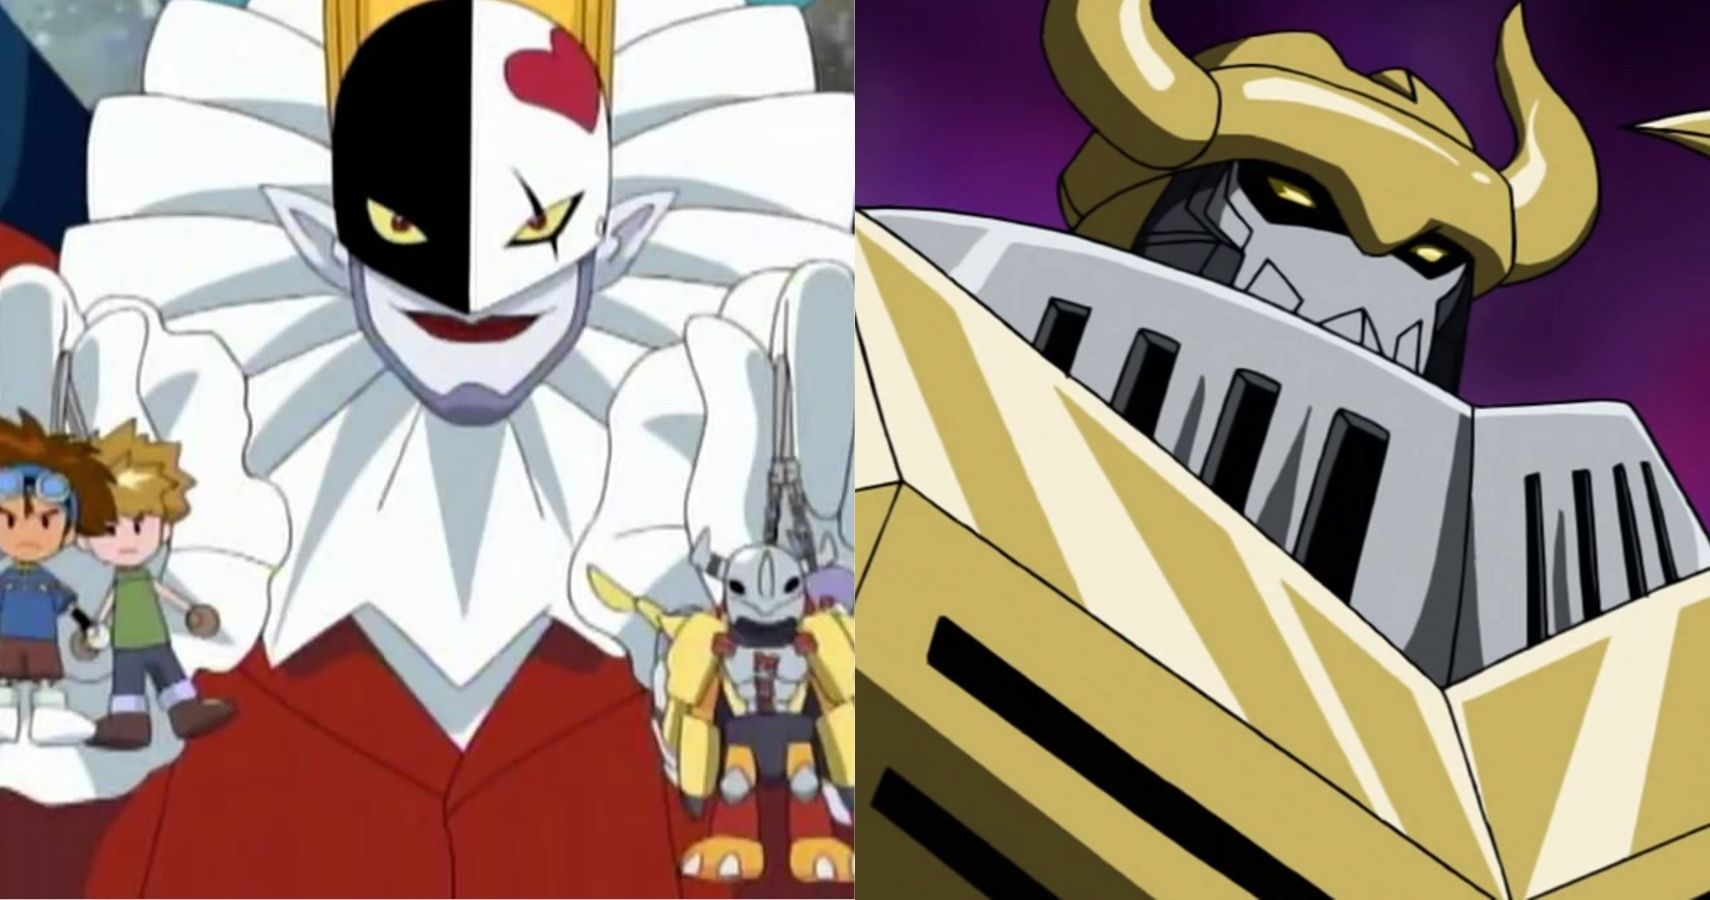 10 Best Villains In Digimon Cbr